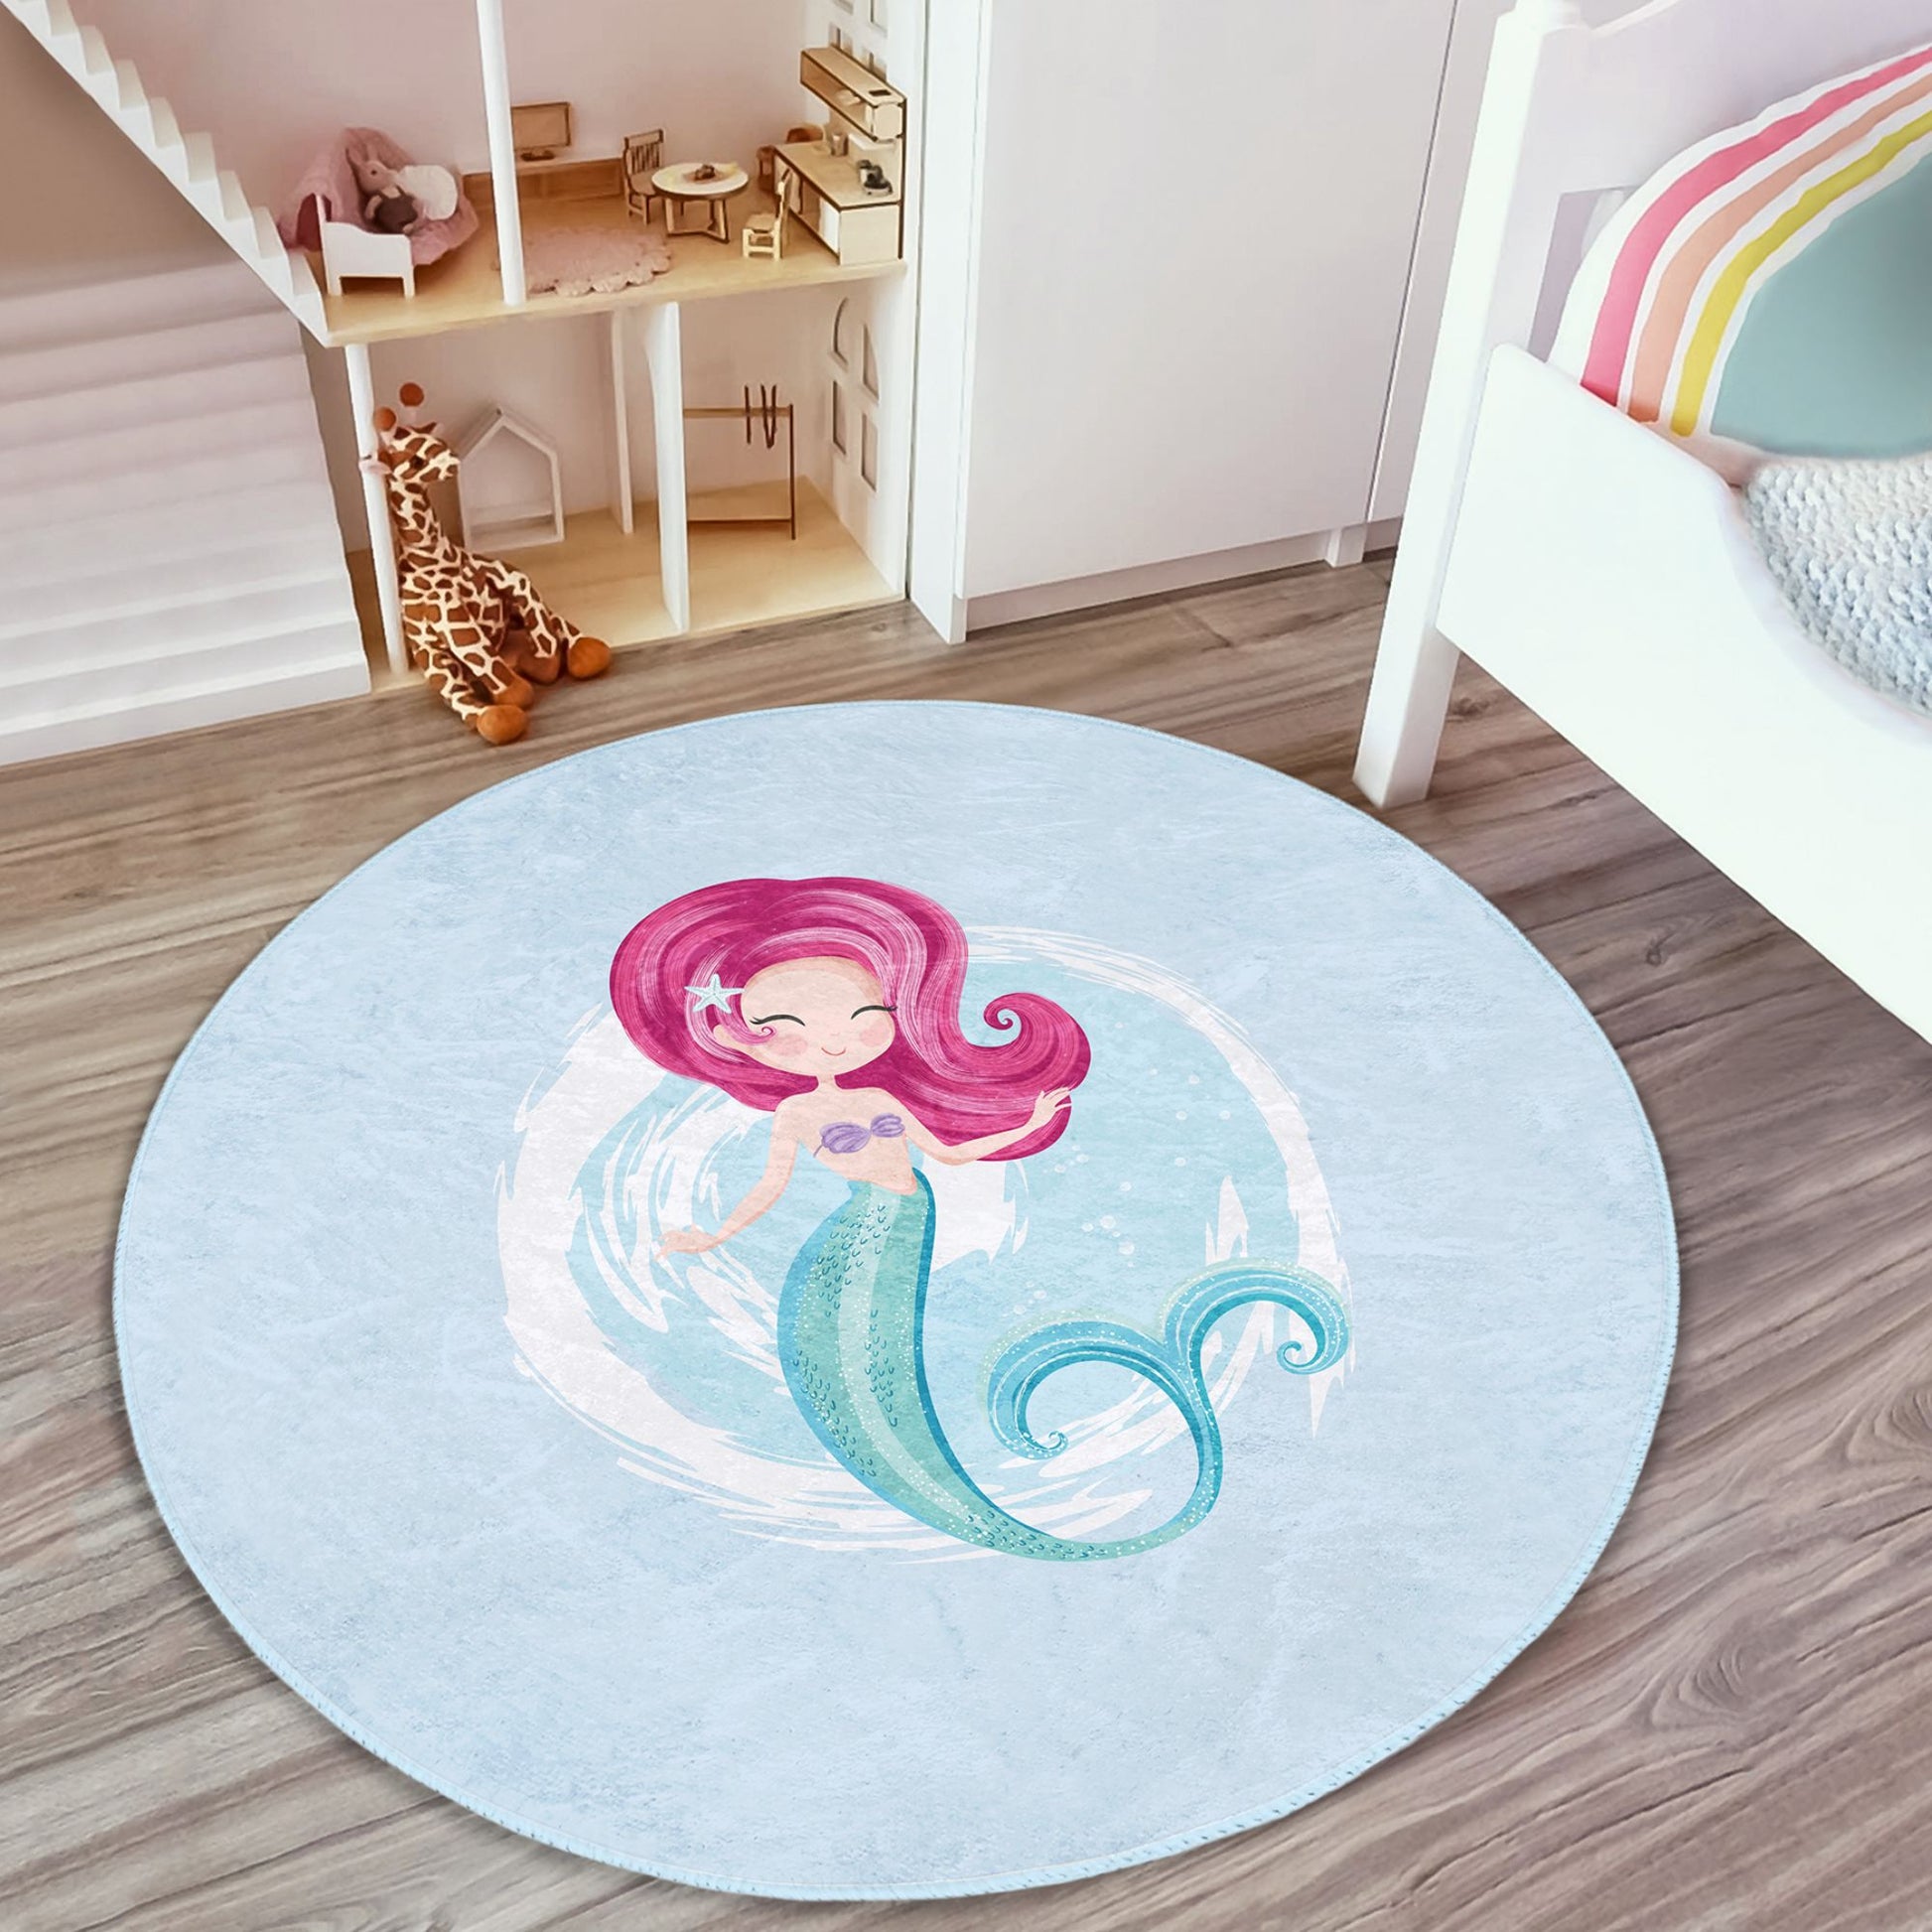 Adorable Mermaid Themed Decor for Nursery